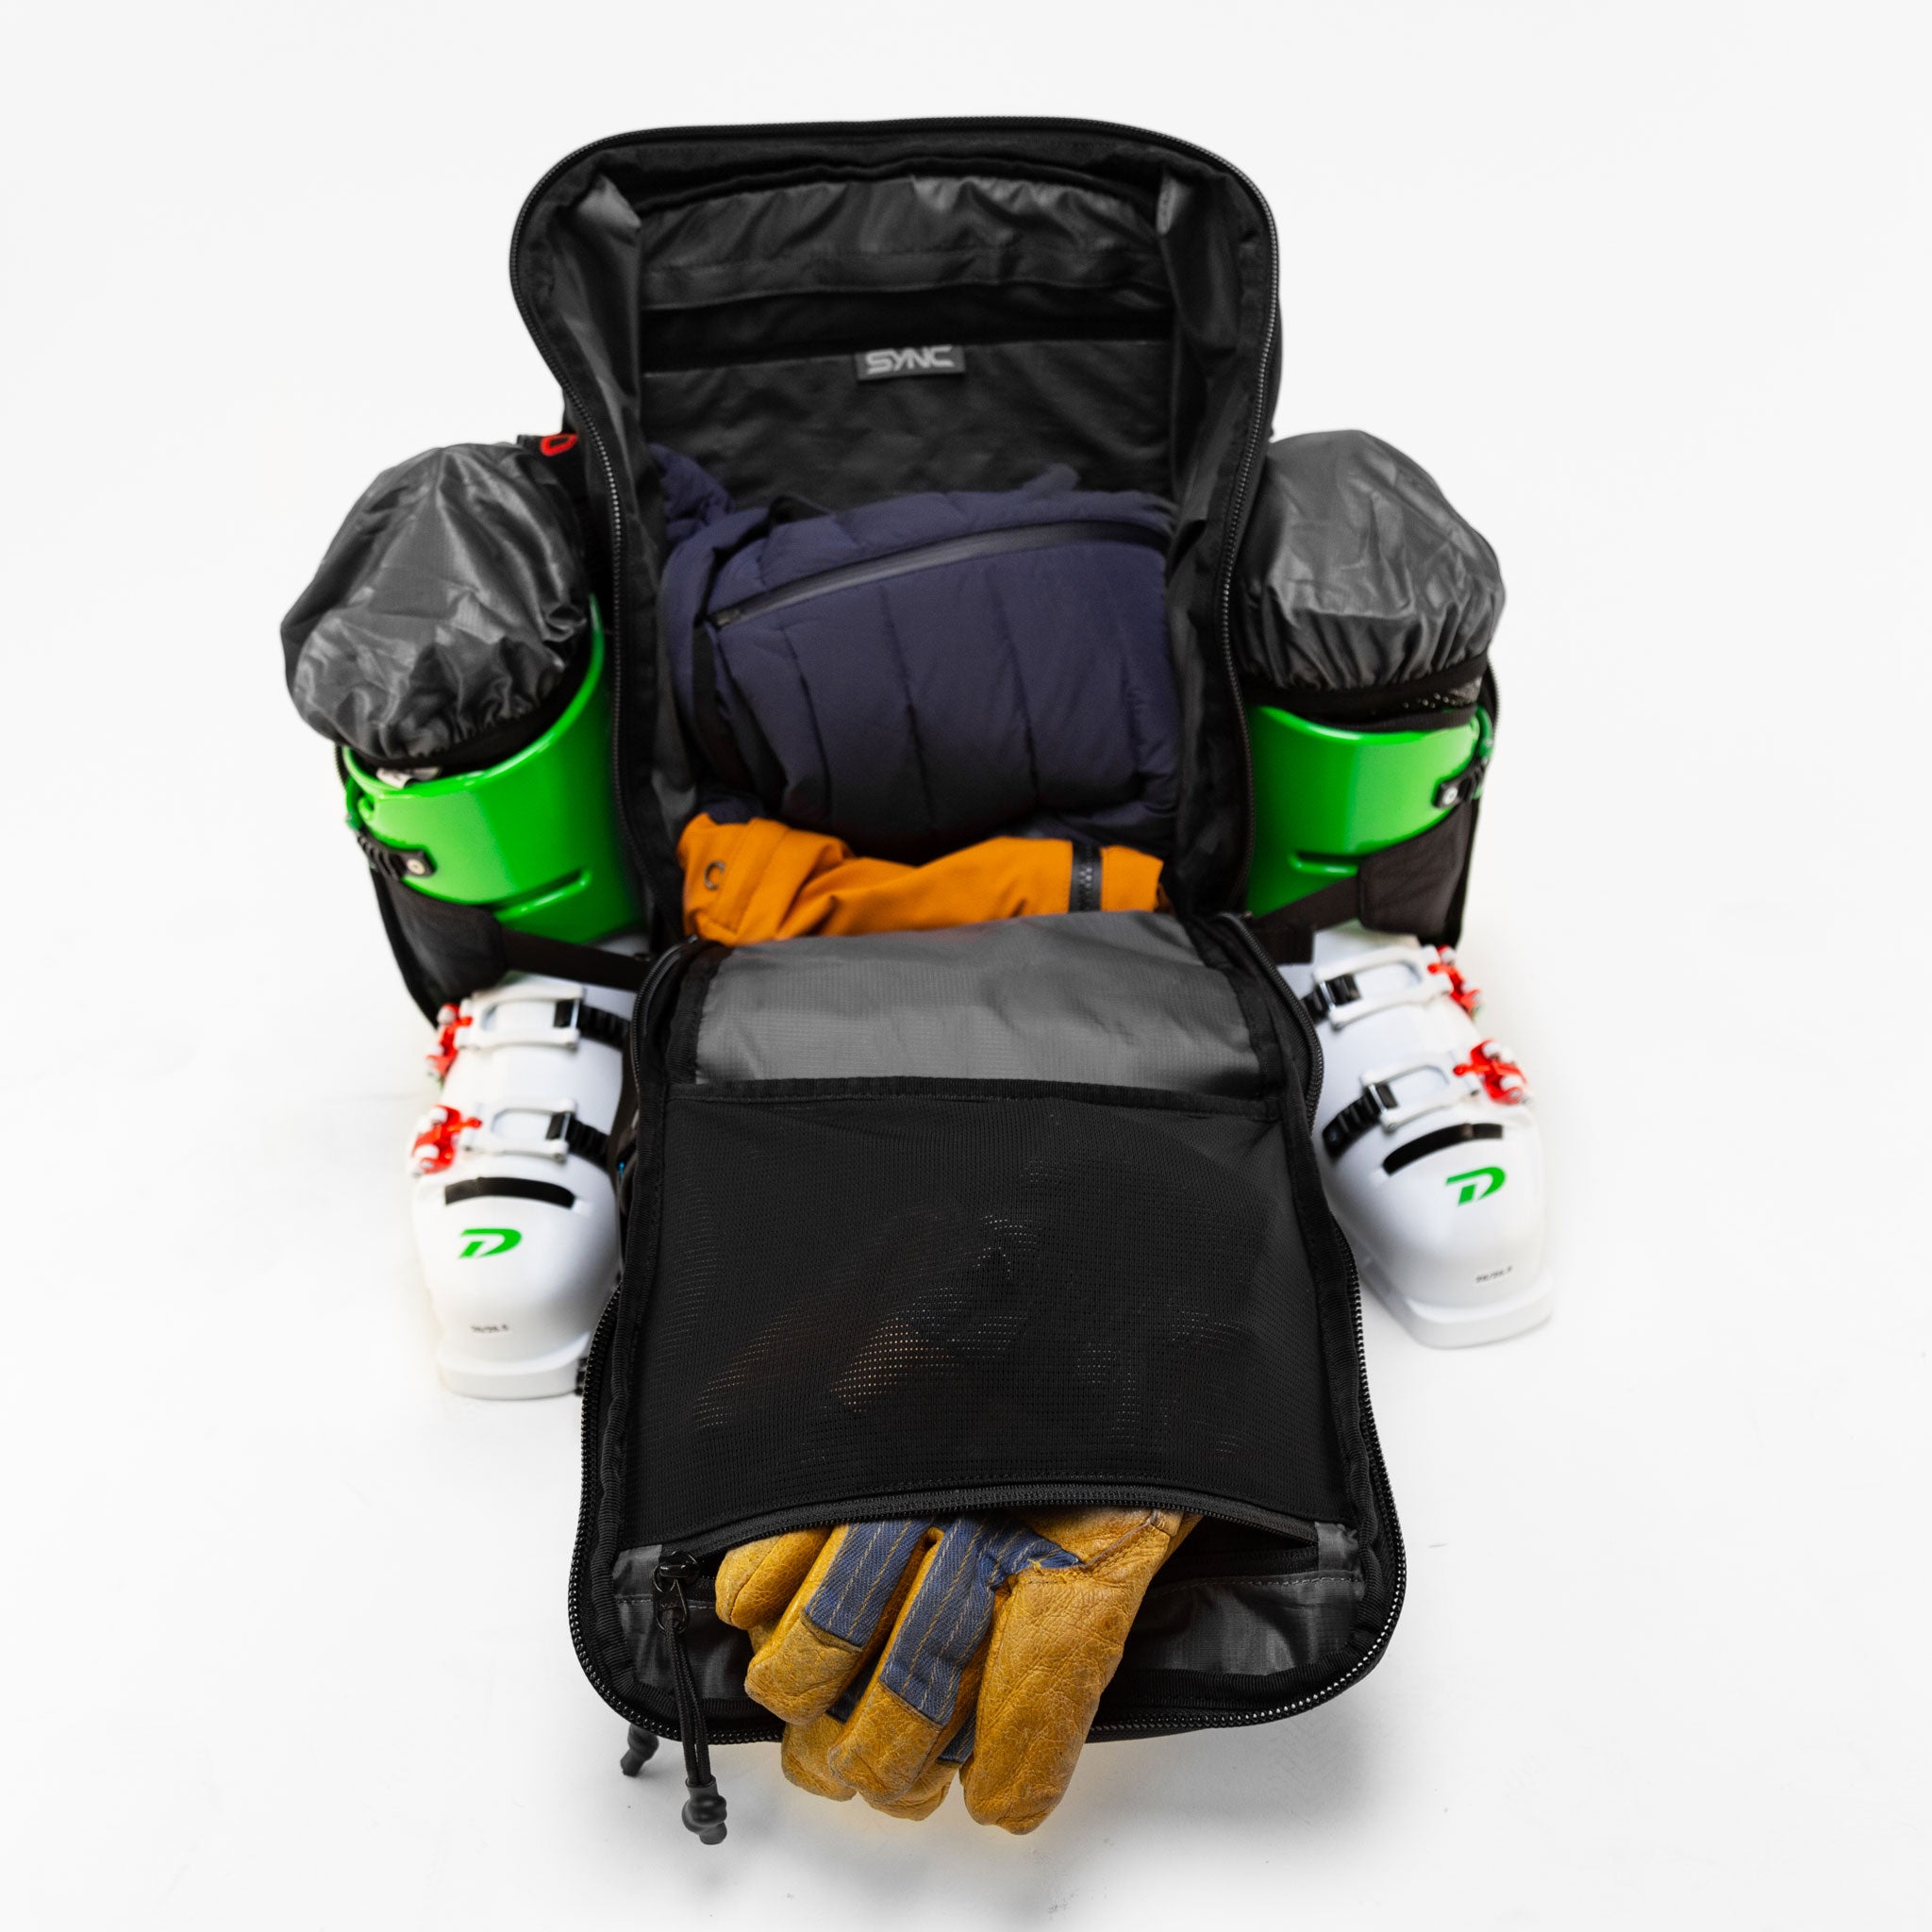 sync-performance-athlete-ski-race-backpack-open-full